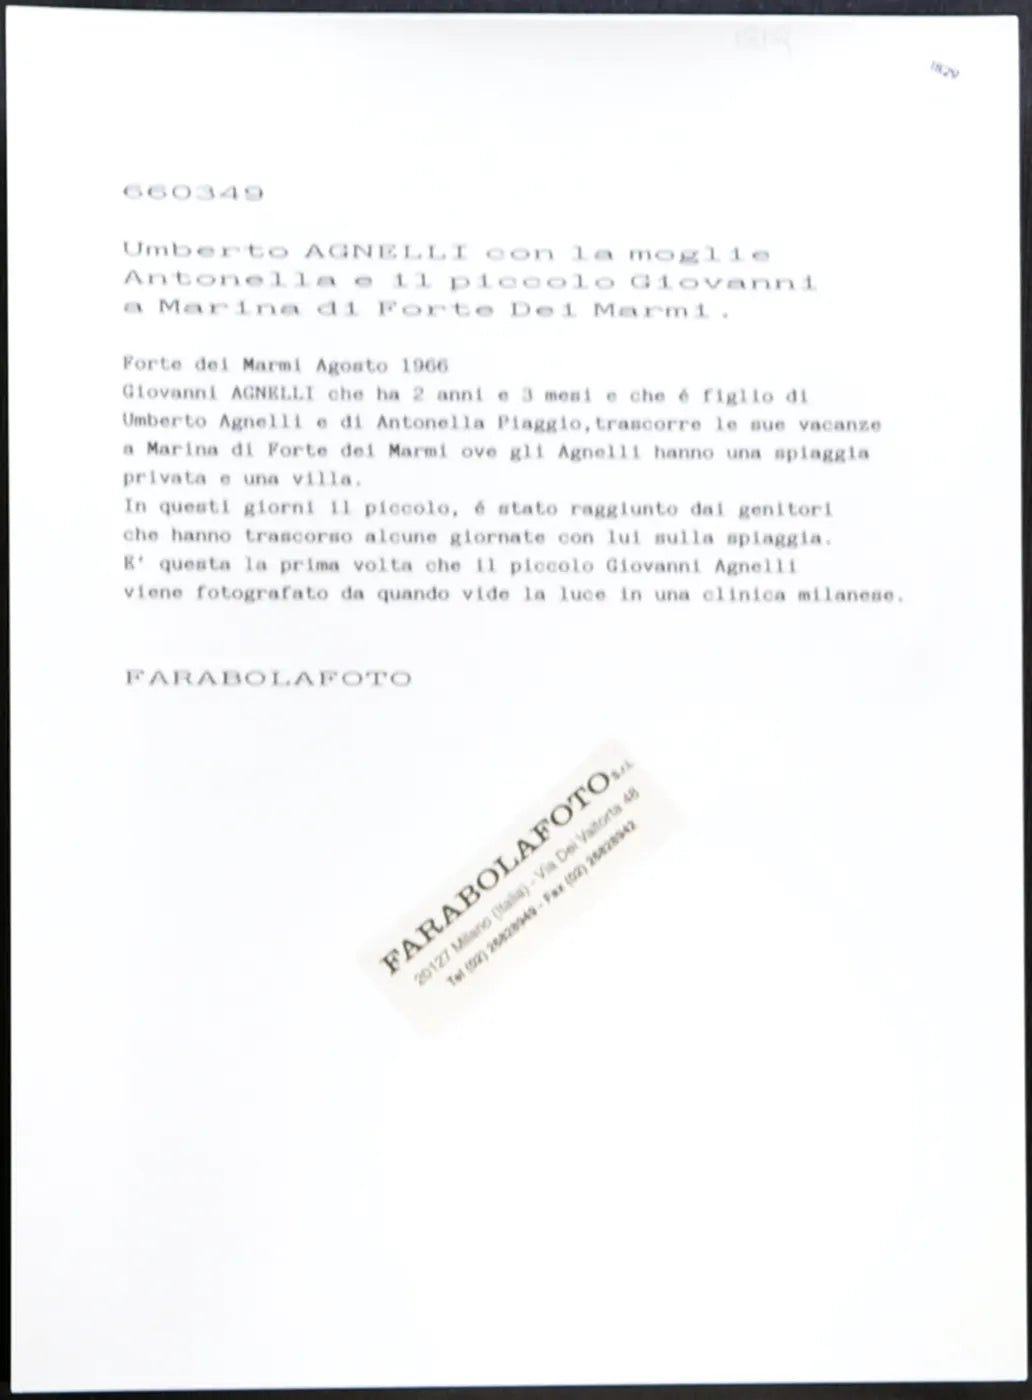 Antonella Piaggio e Giovanni Agnelli 1966 Ft 1829 - Stampa 24x18 cm - Farabola Stampa ai sali d'argento